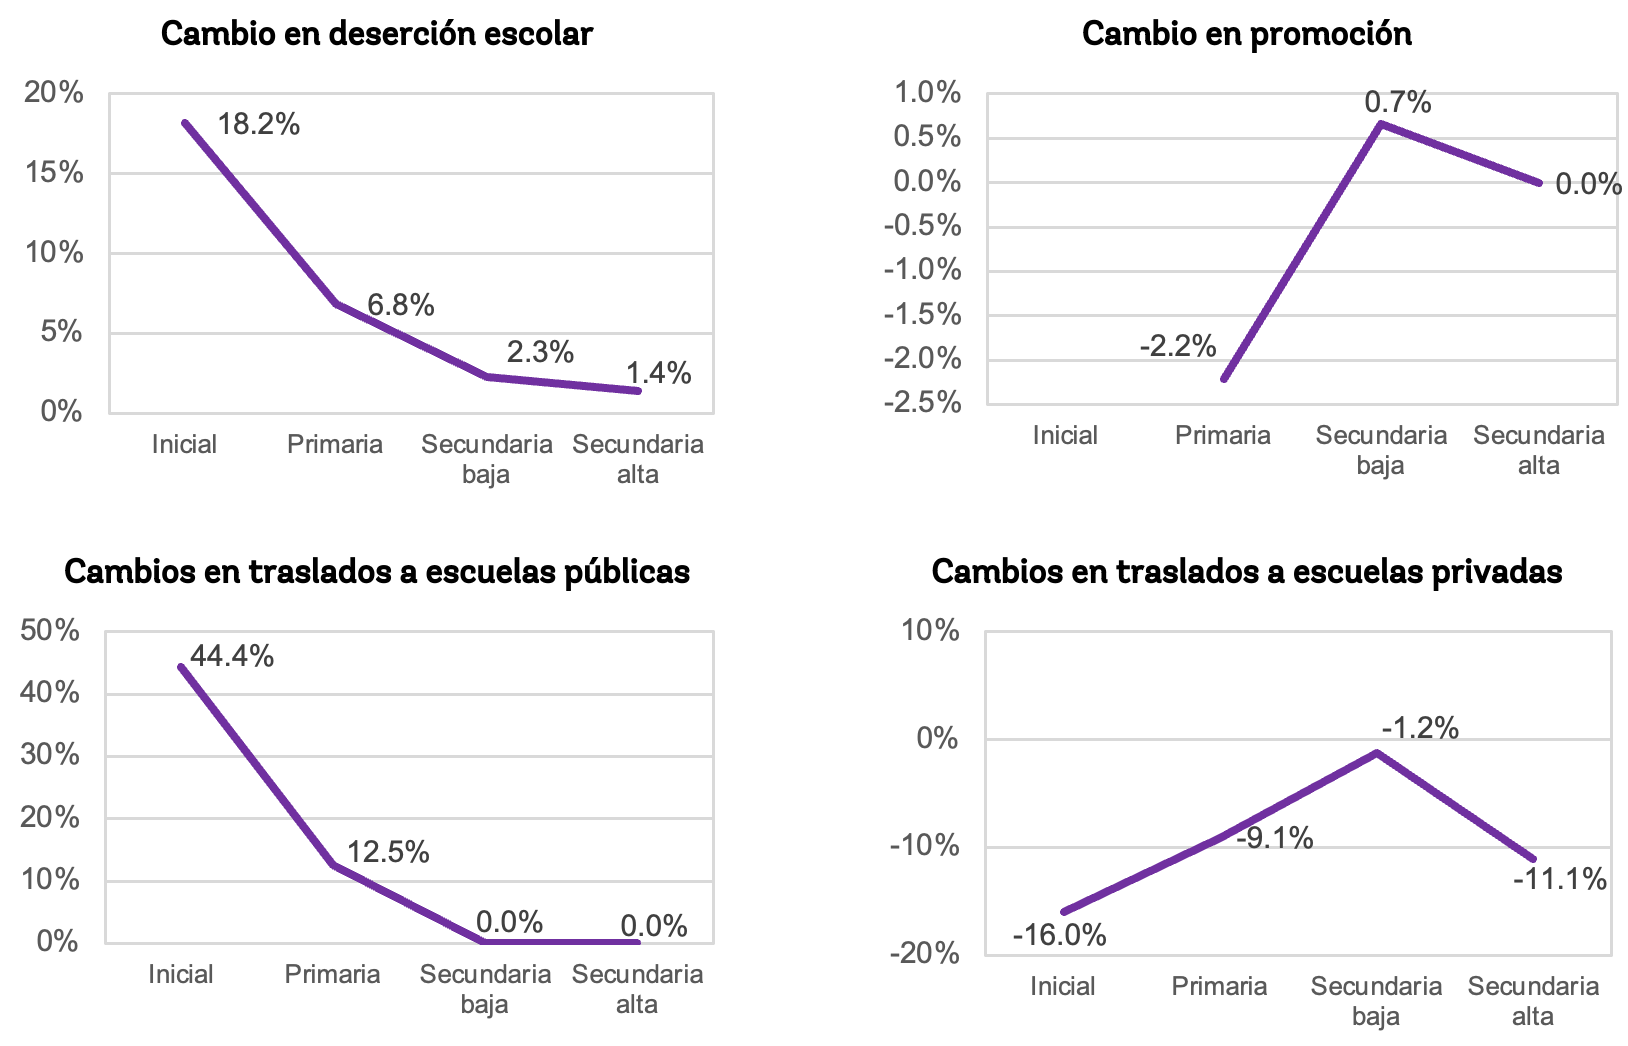 Cambios estimados en resultados educativos por nivel. Cálculos propios de datos administrativos para Guatemala